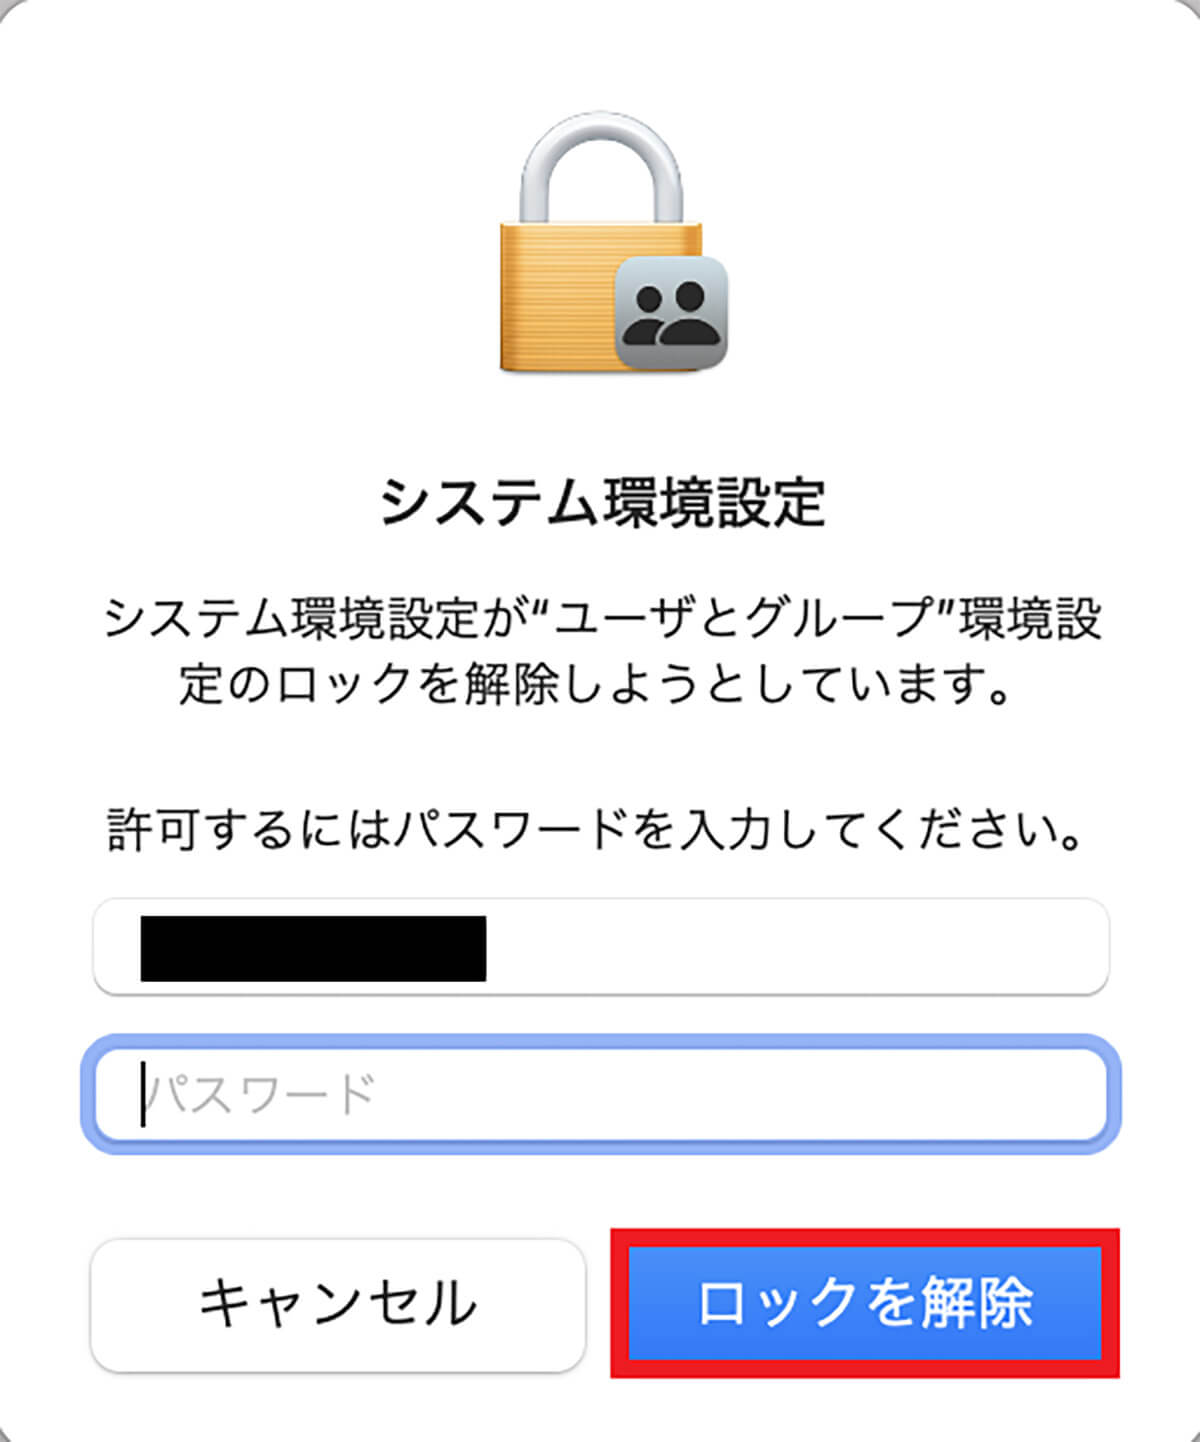 【手順③】管理者ユーザーのパスワードを入力して「ロックを解除」をクリック